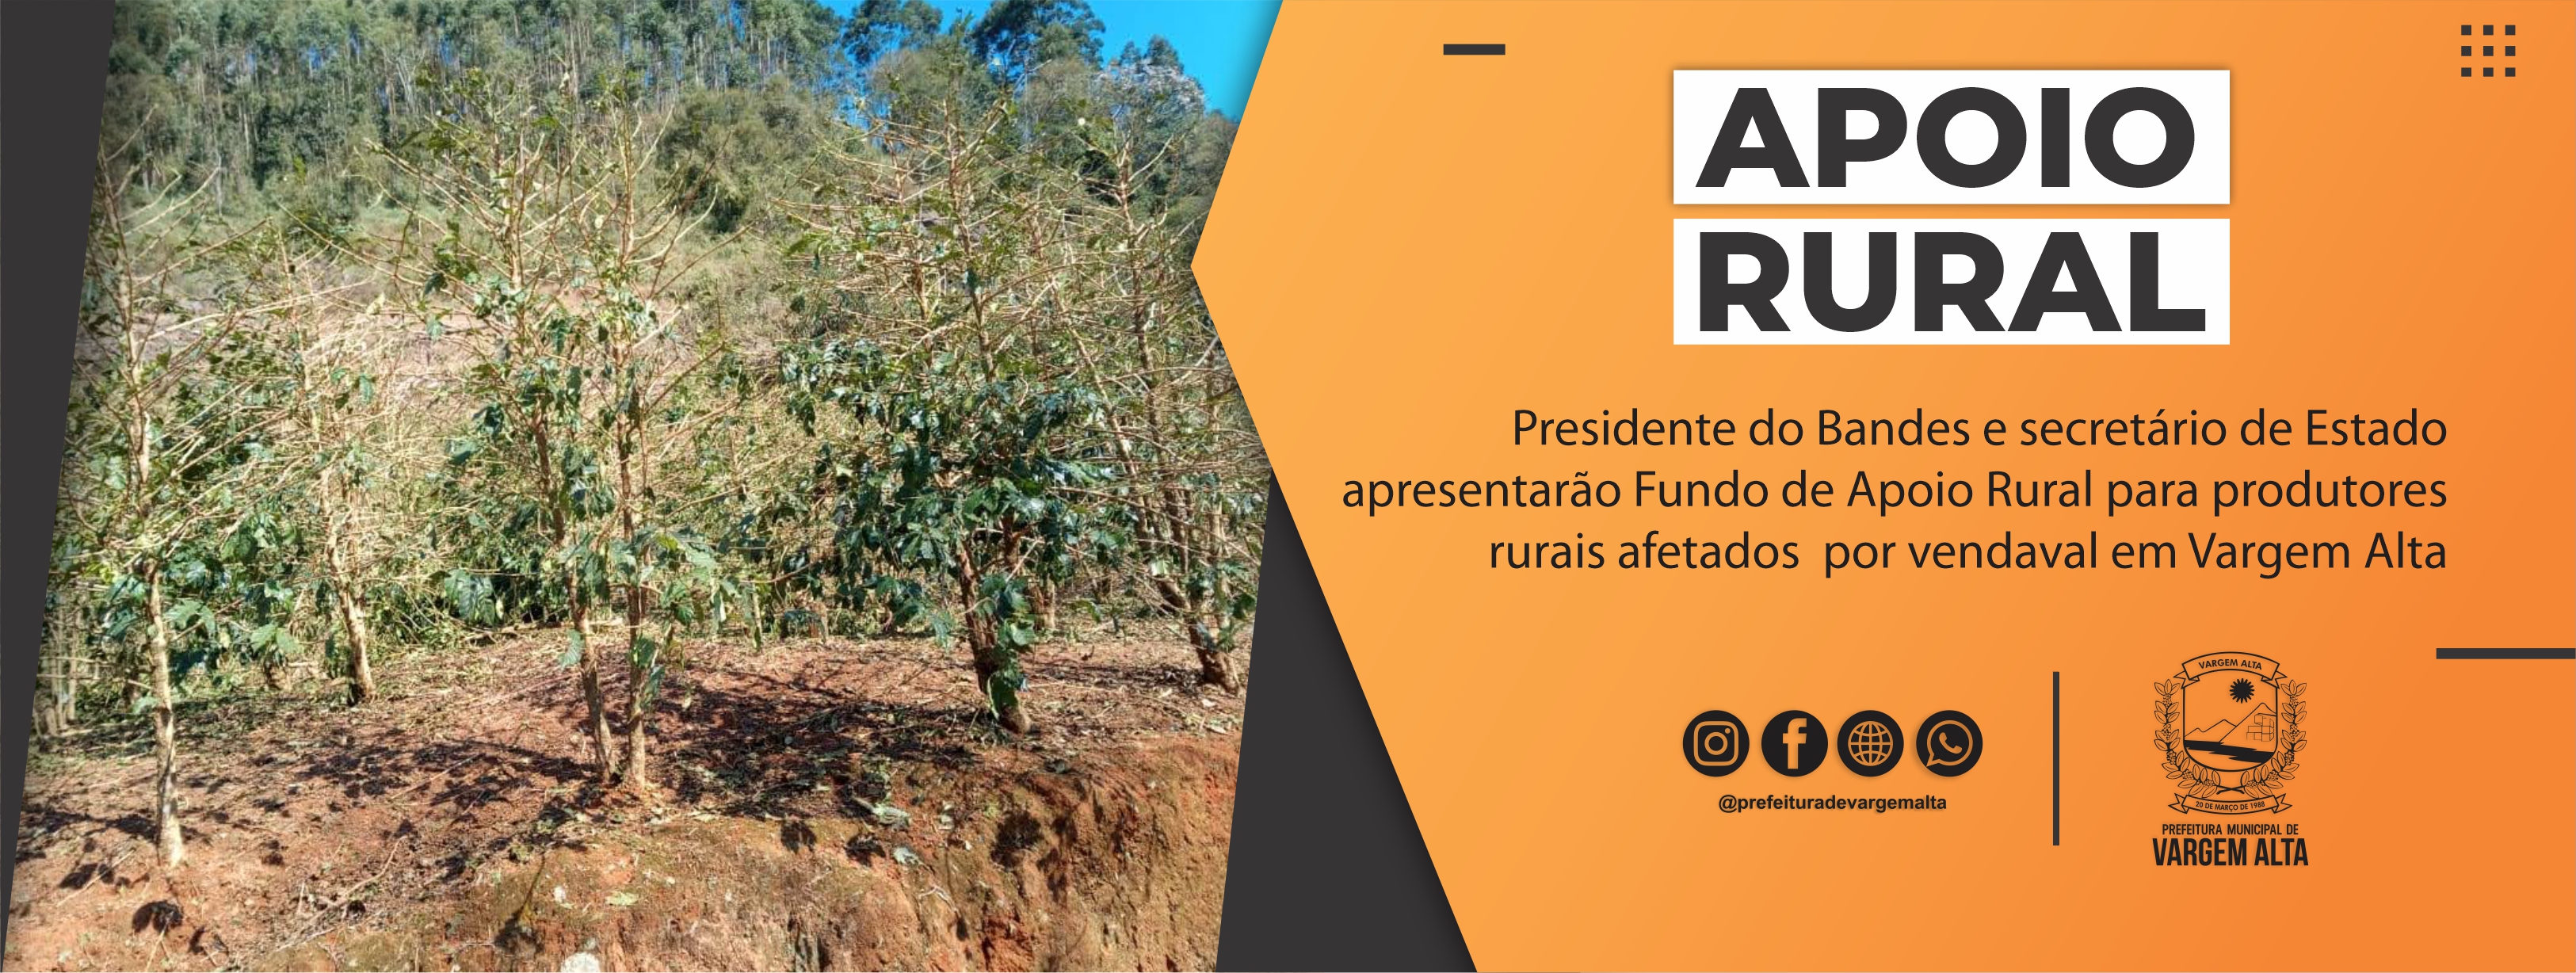 Presidente do Bandes e secretário de Estado apresentarão Fundo de Apoio Rural para produtores rurais afetados por vendaval em Vargem Alta